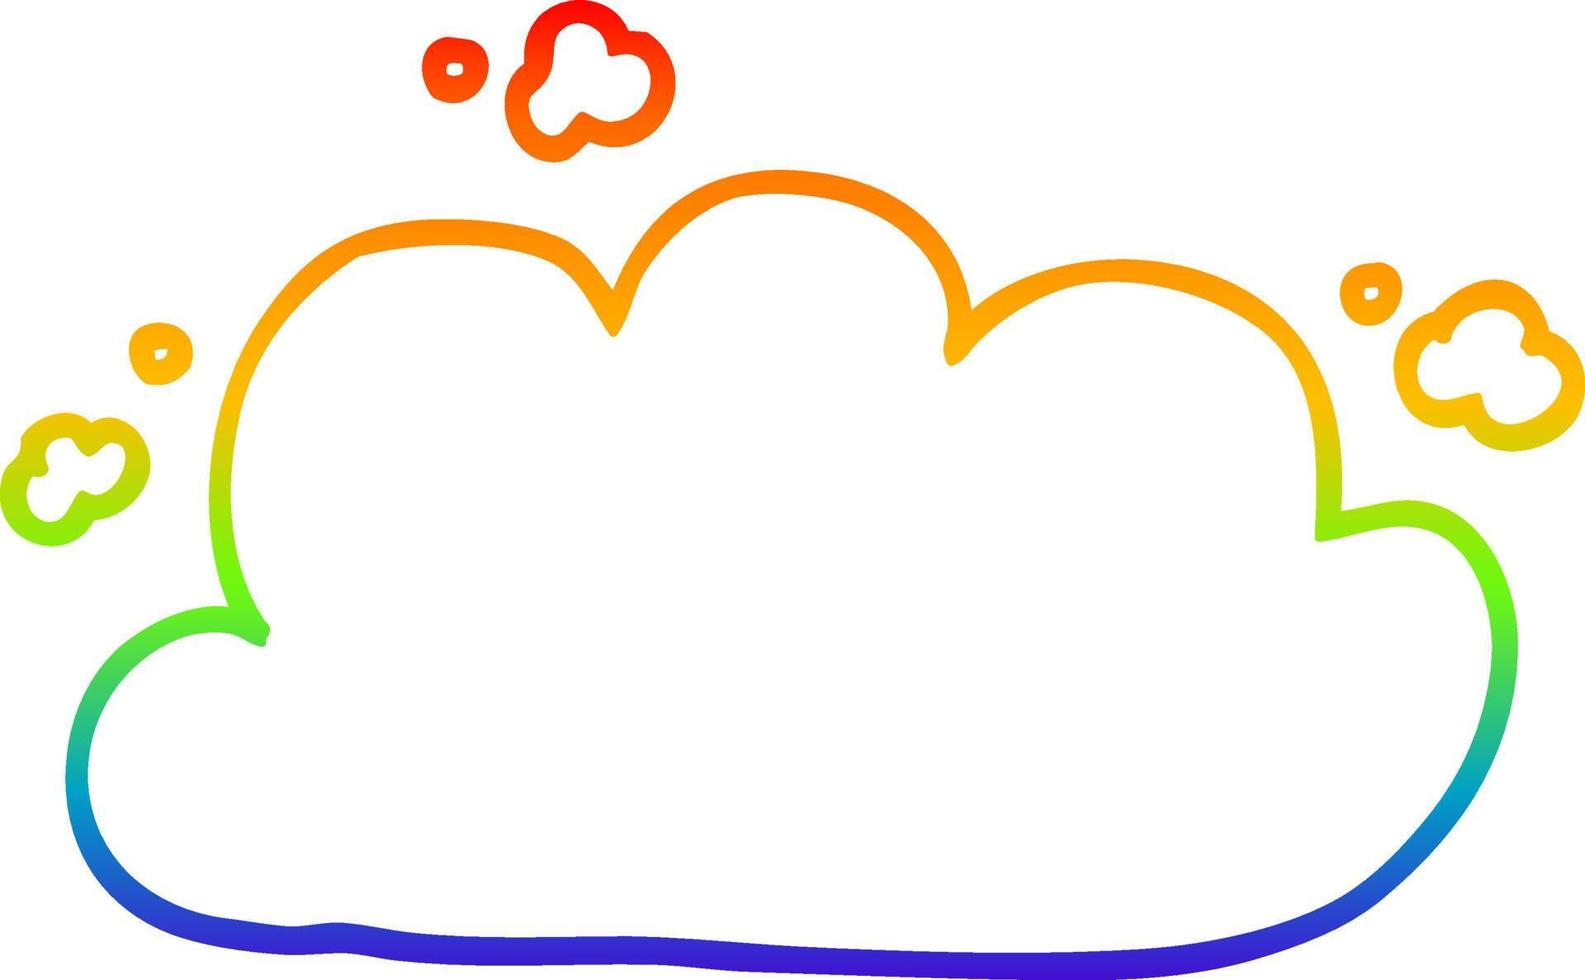 nuvola di tempesta del fumetto del disegno della linea del gradiente dell'arcobaleno vettore